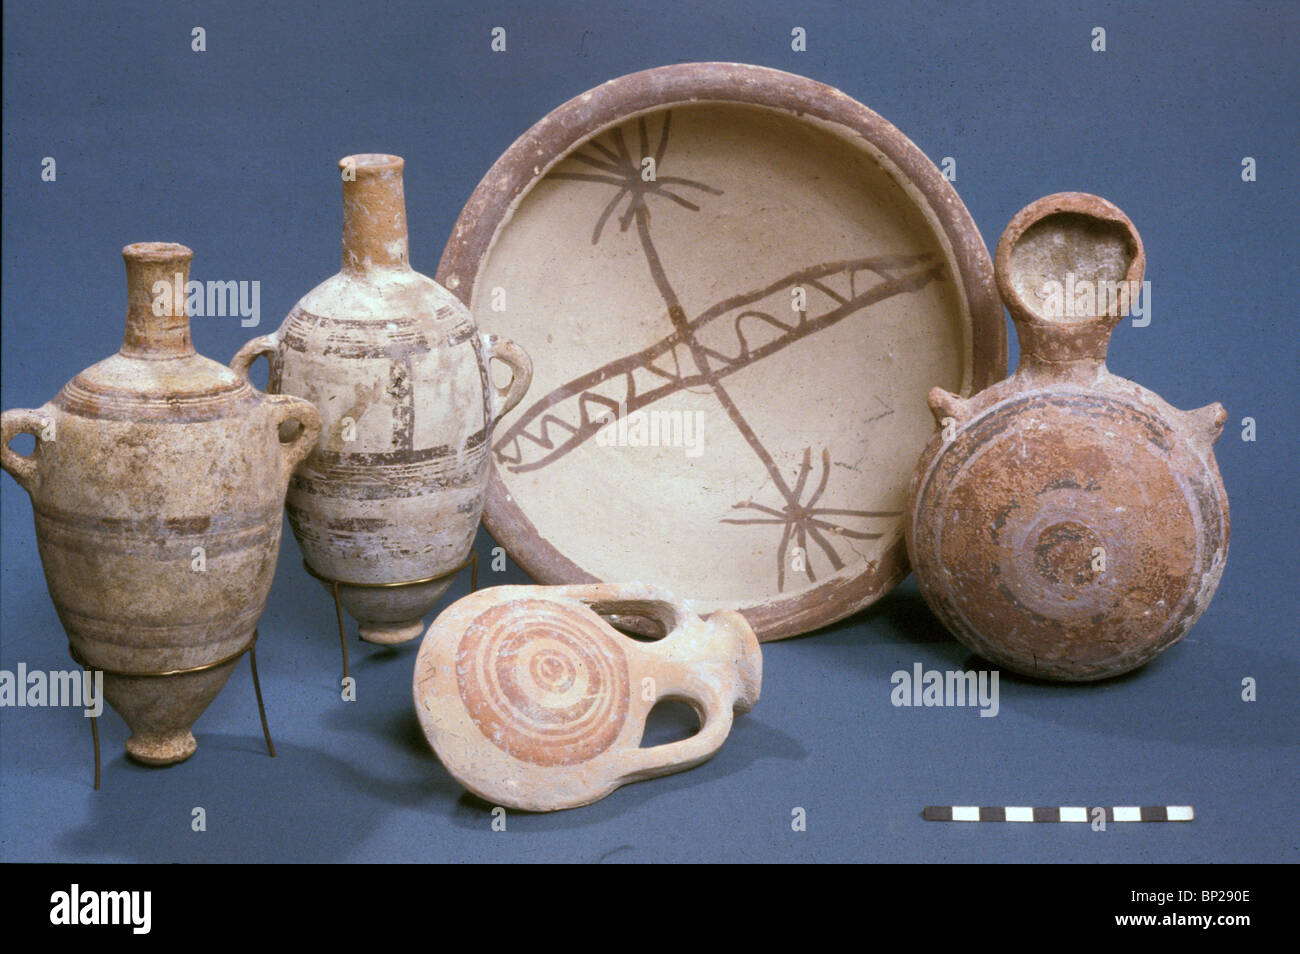 2456. CNAANITE, poterie décorée à la fin de la période de bronze (1500-1200 avant J.-C.) DE GUÉZER Banque D'Images